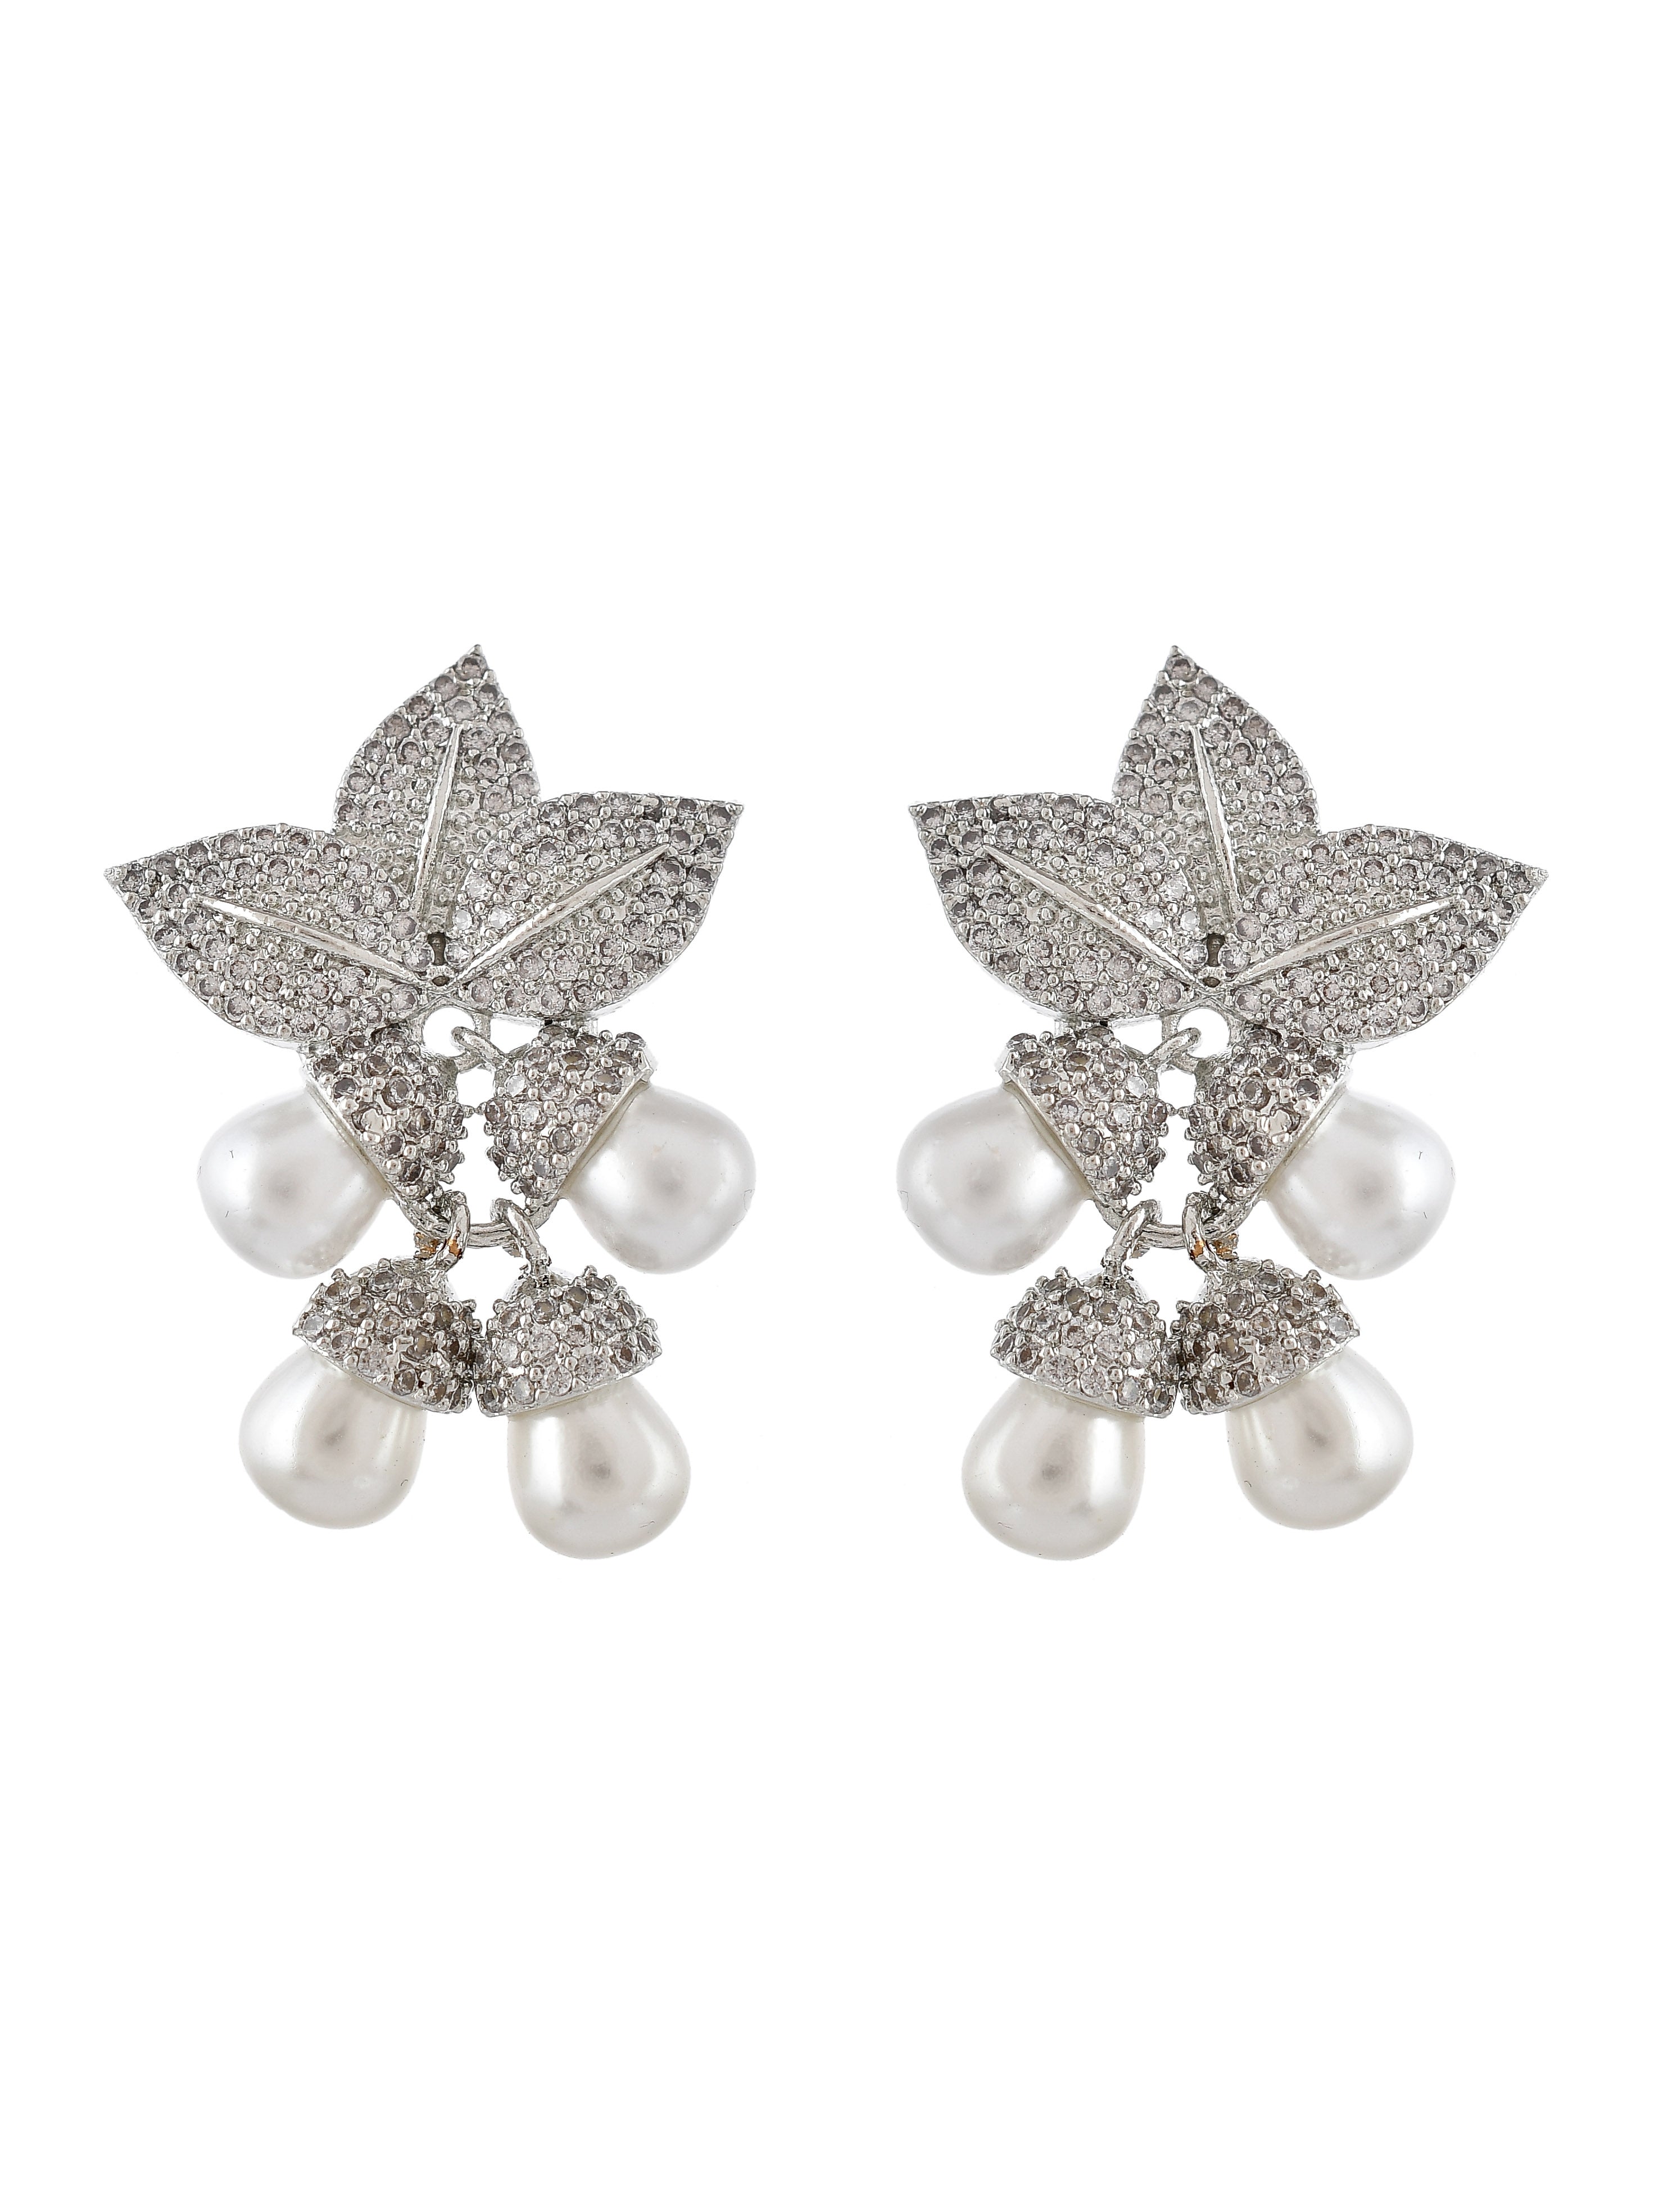 Chandbali American Diamond Multi Stone Silver Finish Earrings, Statement  Earrings,ad Earrings - Etsy